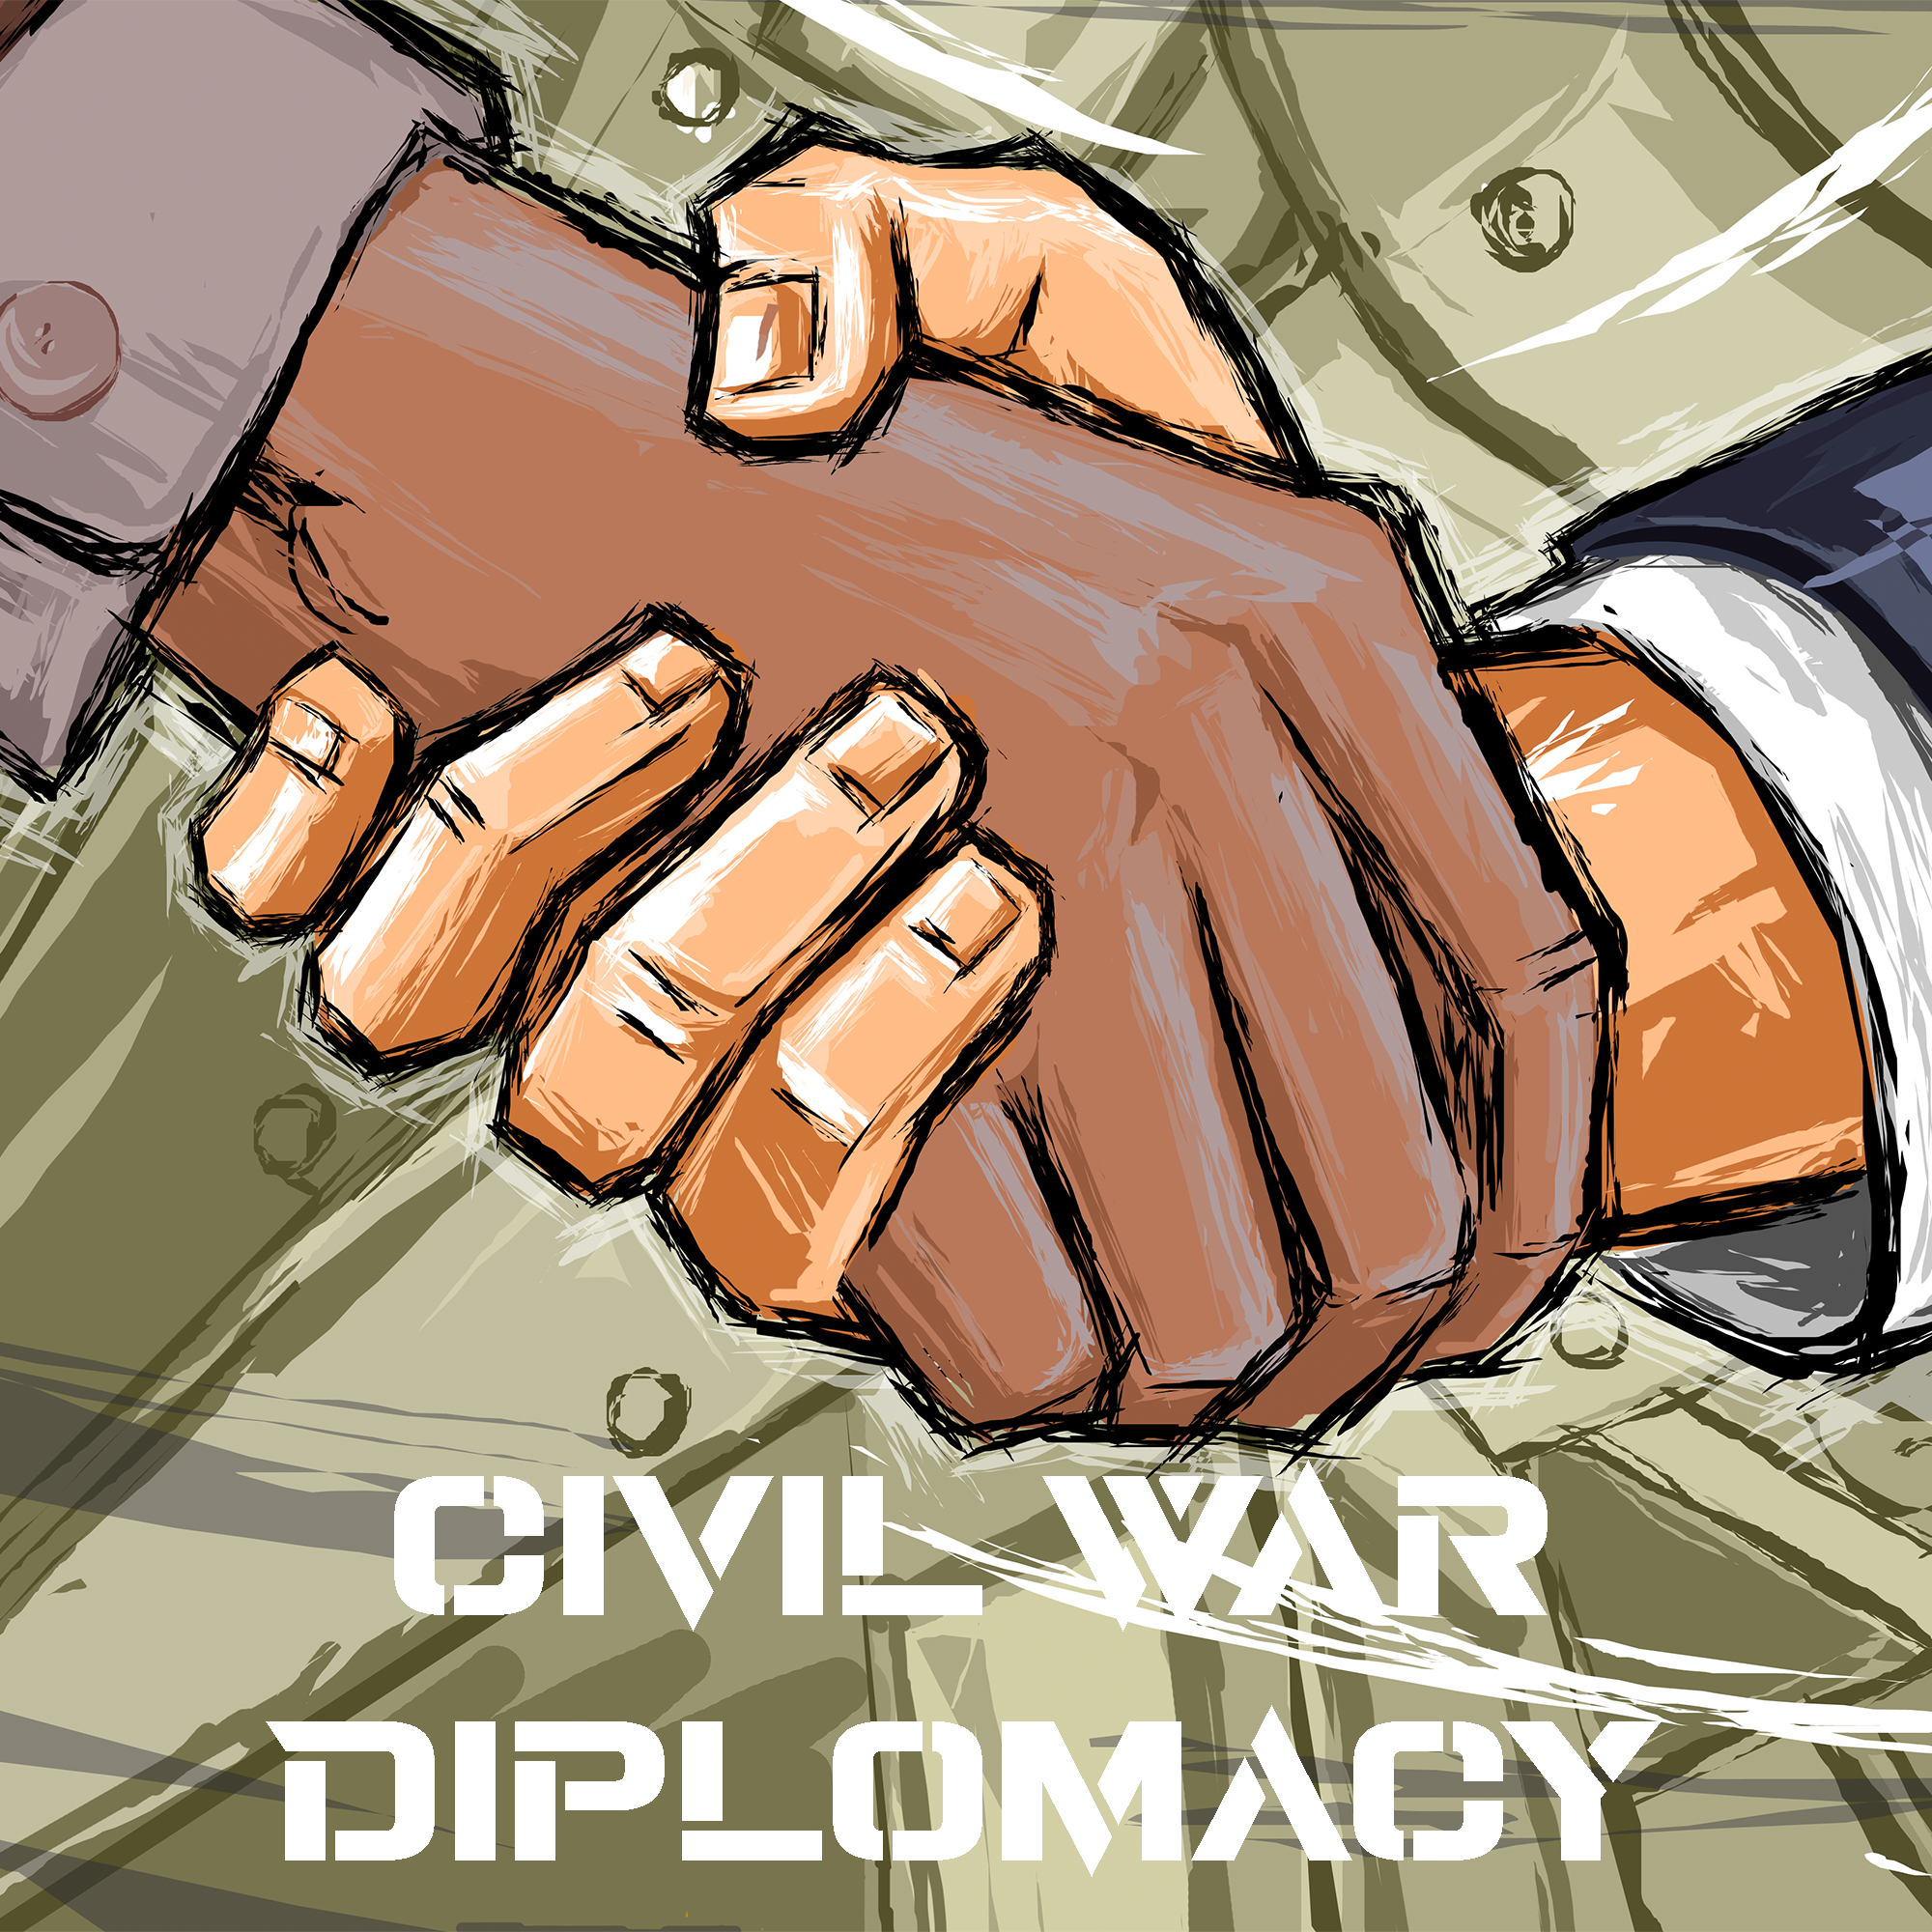 Civil War Diplomacy